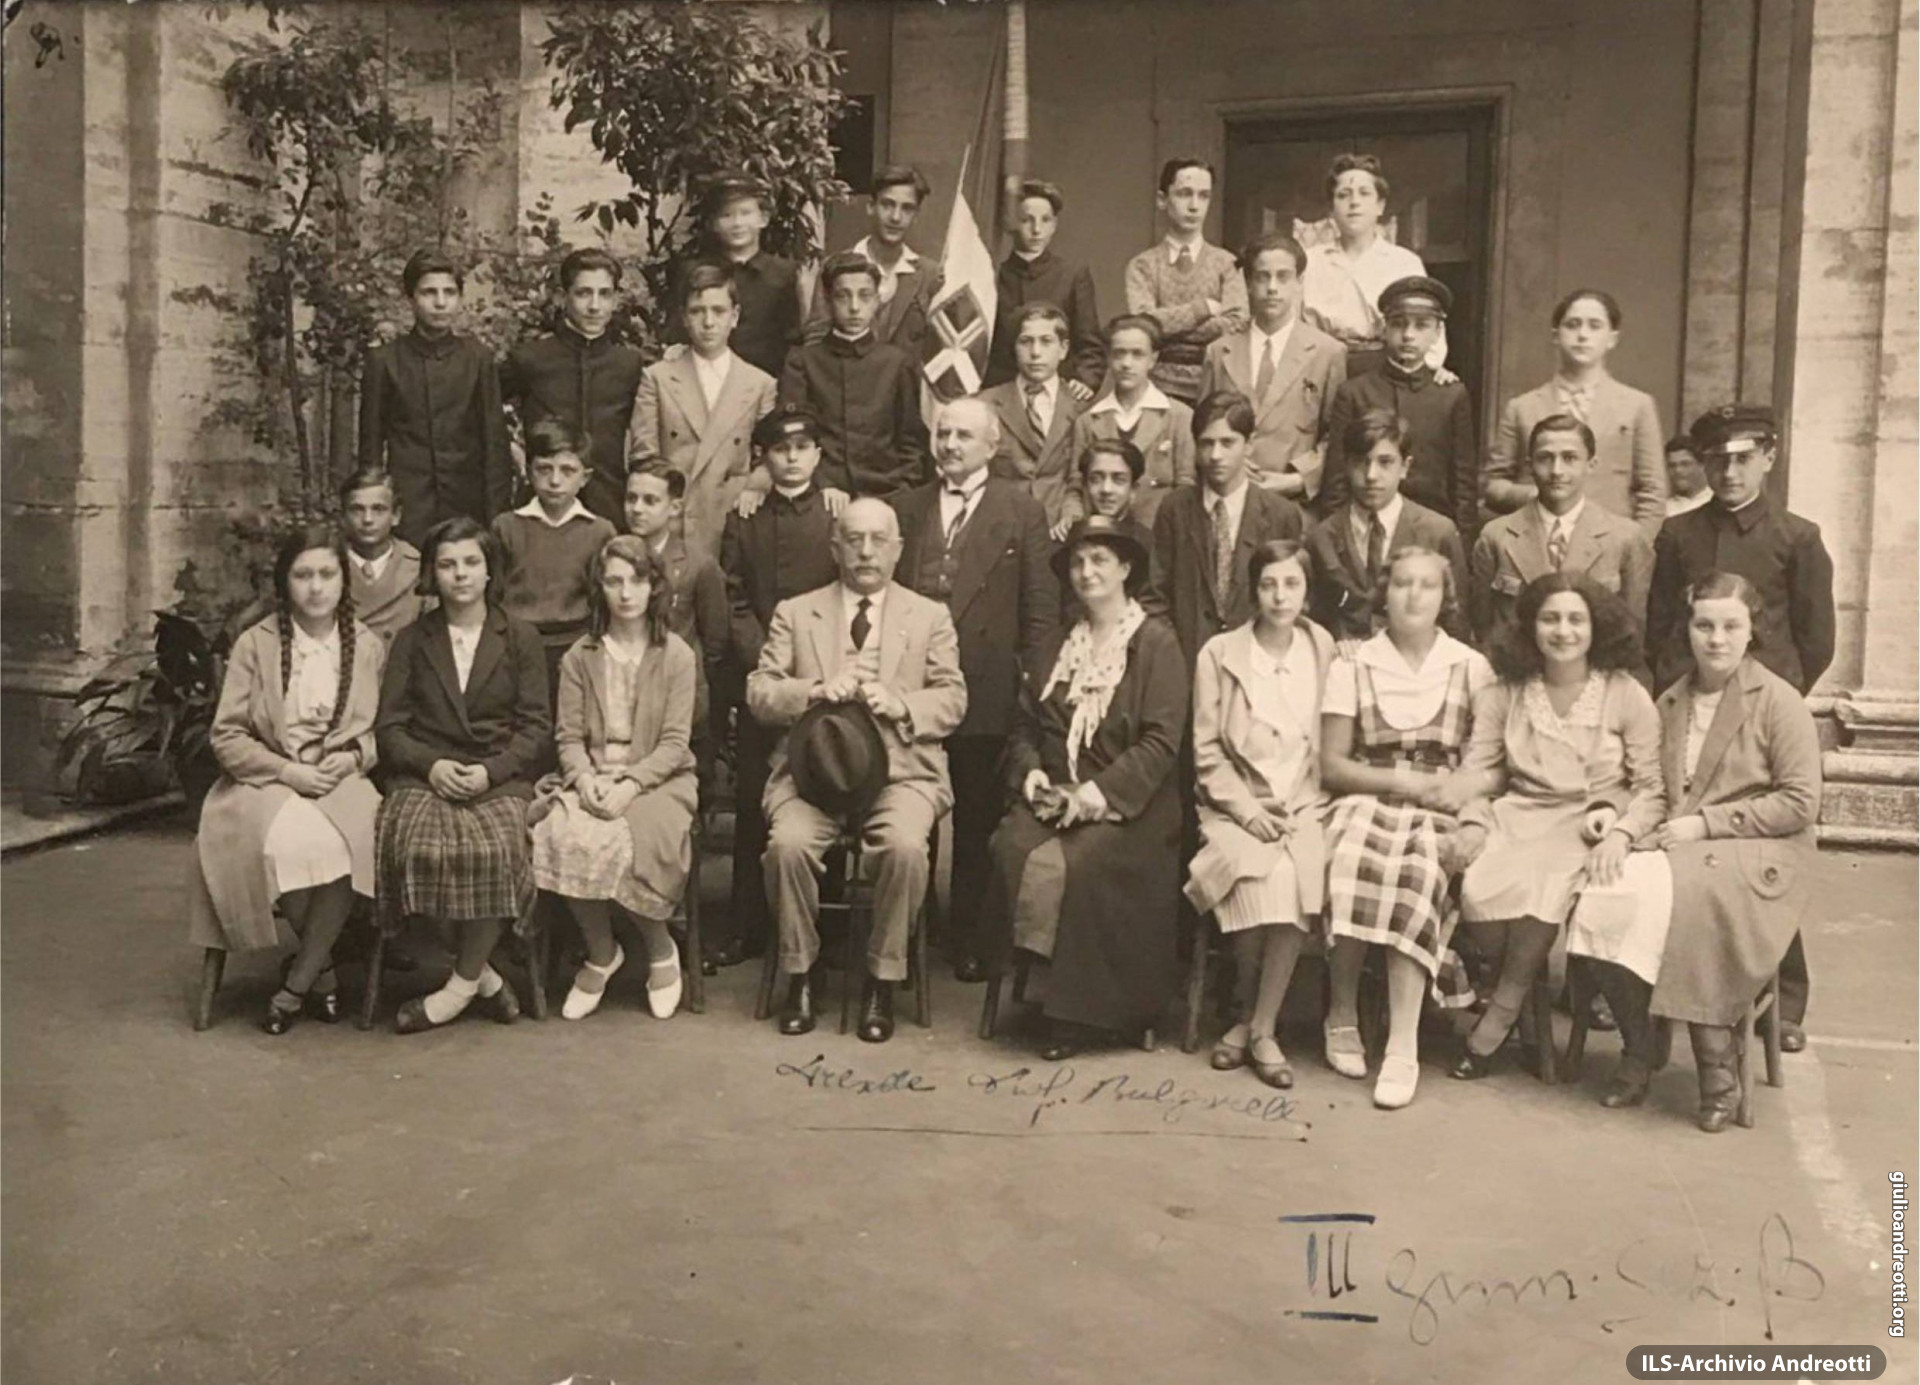 Giulio Andreotti nella foto di classe della III ginnasio. È in seconda fila, il secondo da sinistra